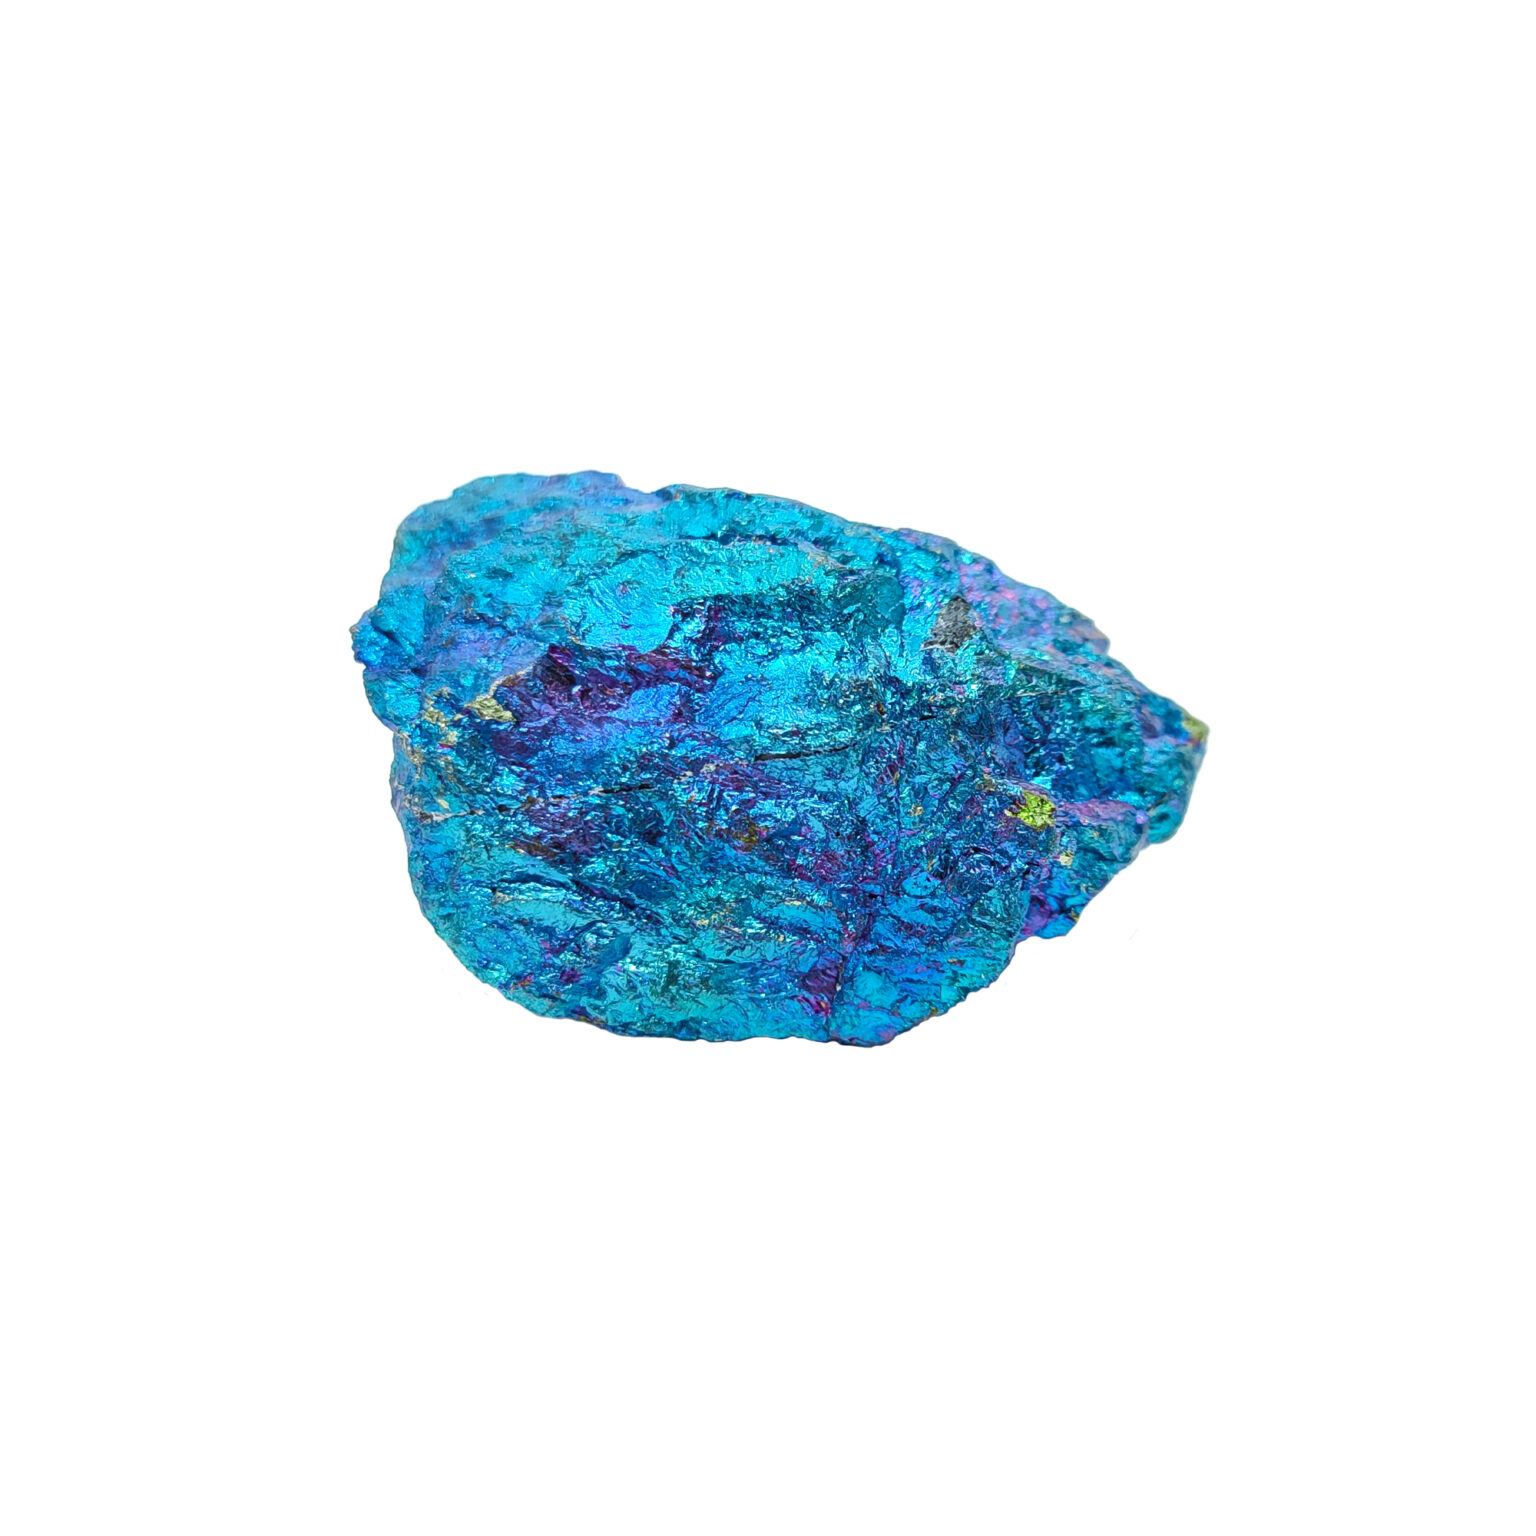 Blau-bunter Buntkupfer / Pfauenerz Rohstein mit schimmernder Oberfläche.